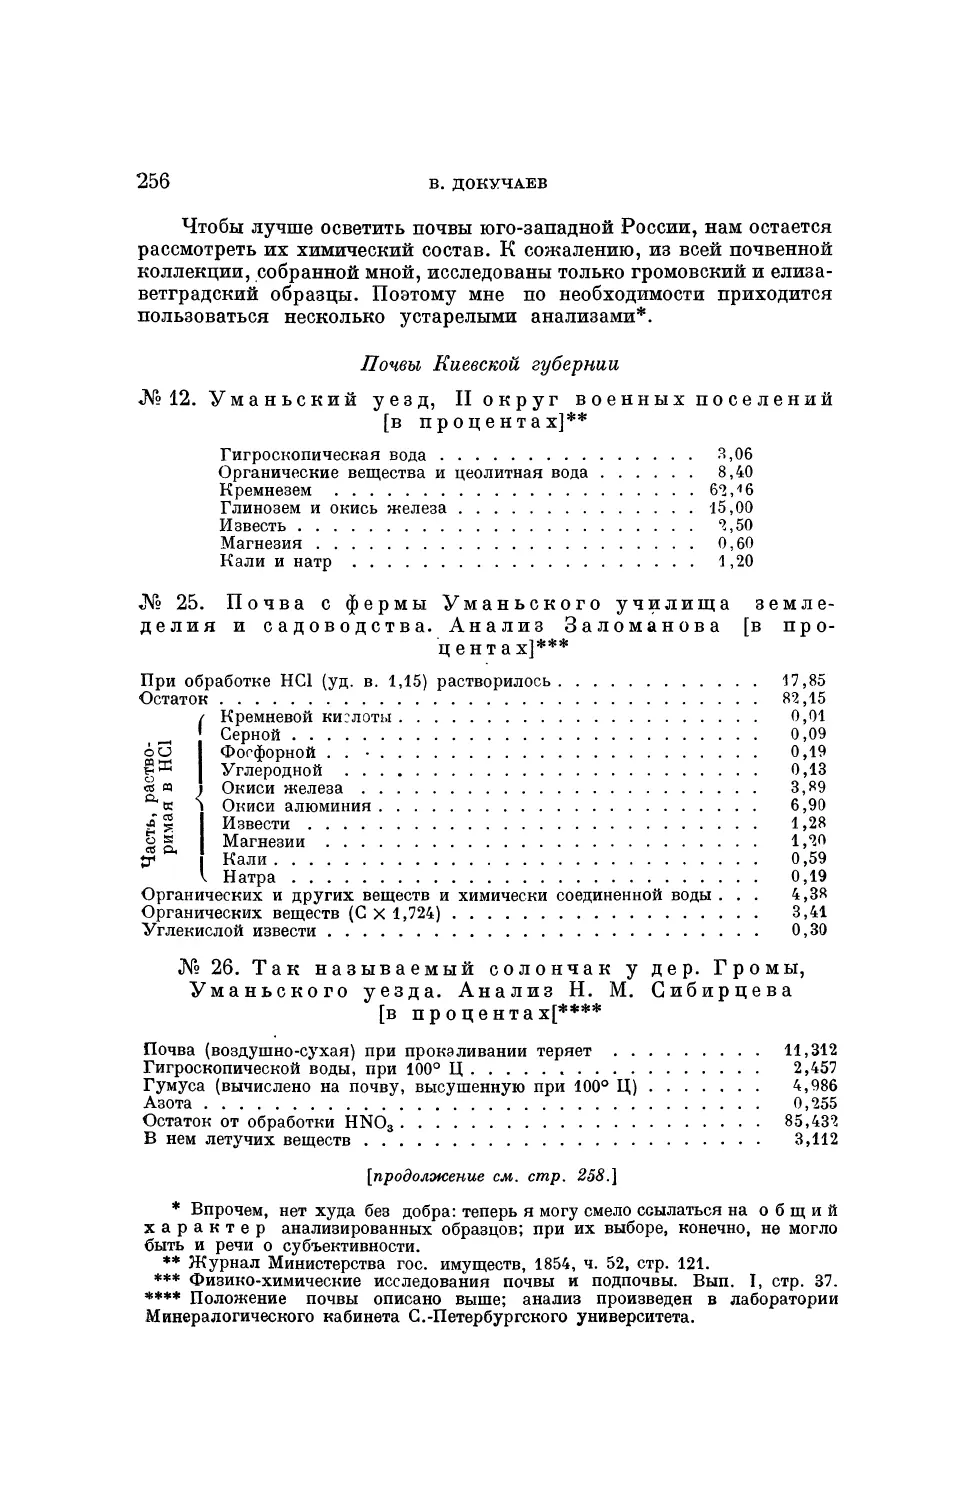 Химический состав почв юго-западной черноземной России